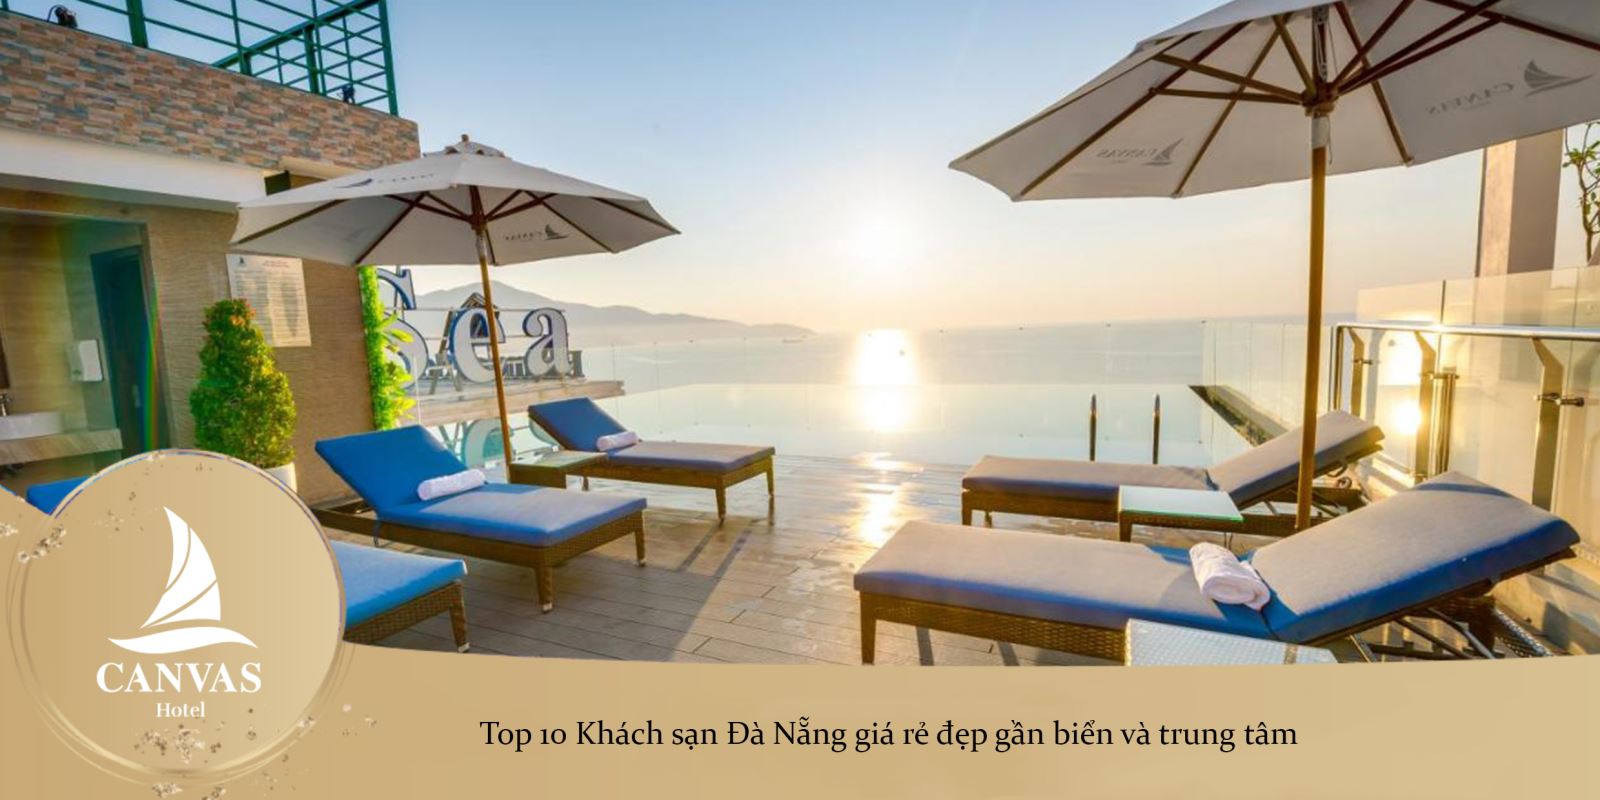 Top 10 Khách sạn Đà Nẵng giá rẻ đẹp gần biển và trung tâm